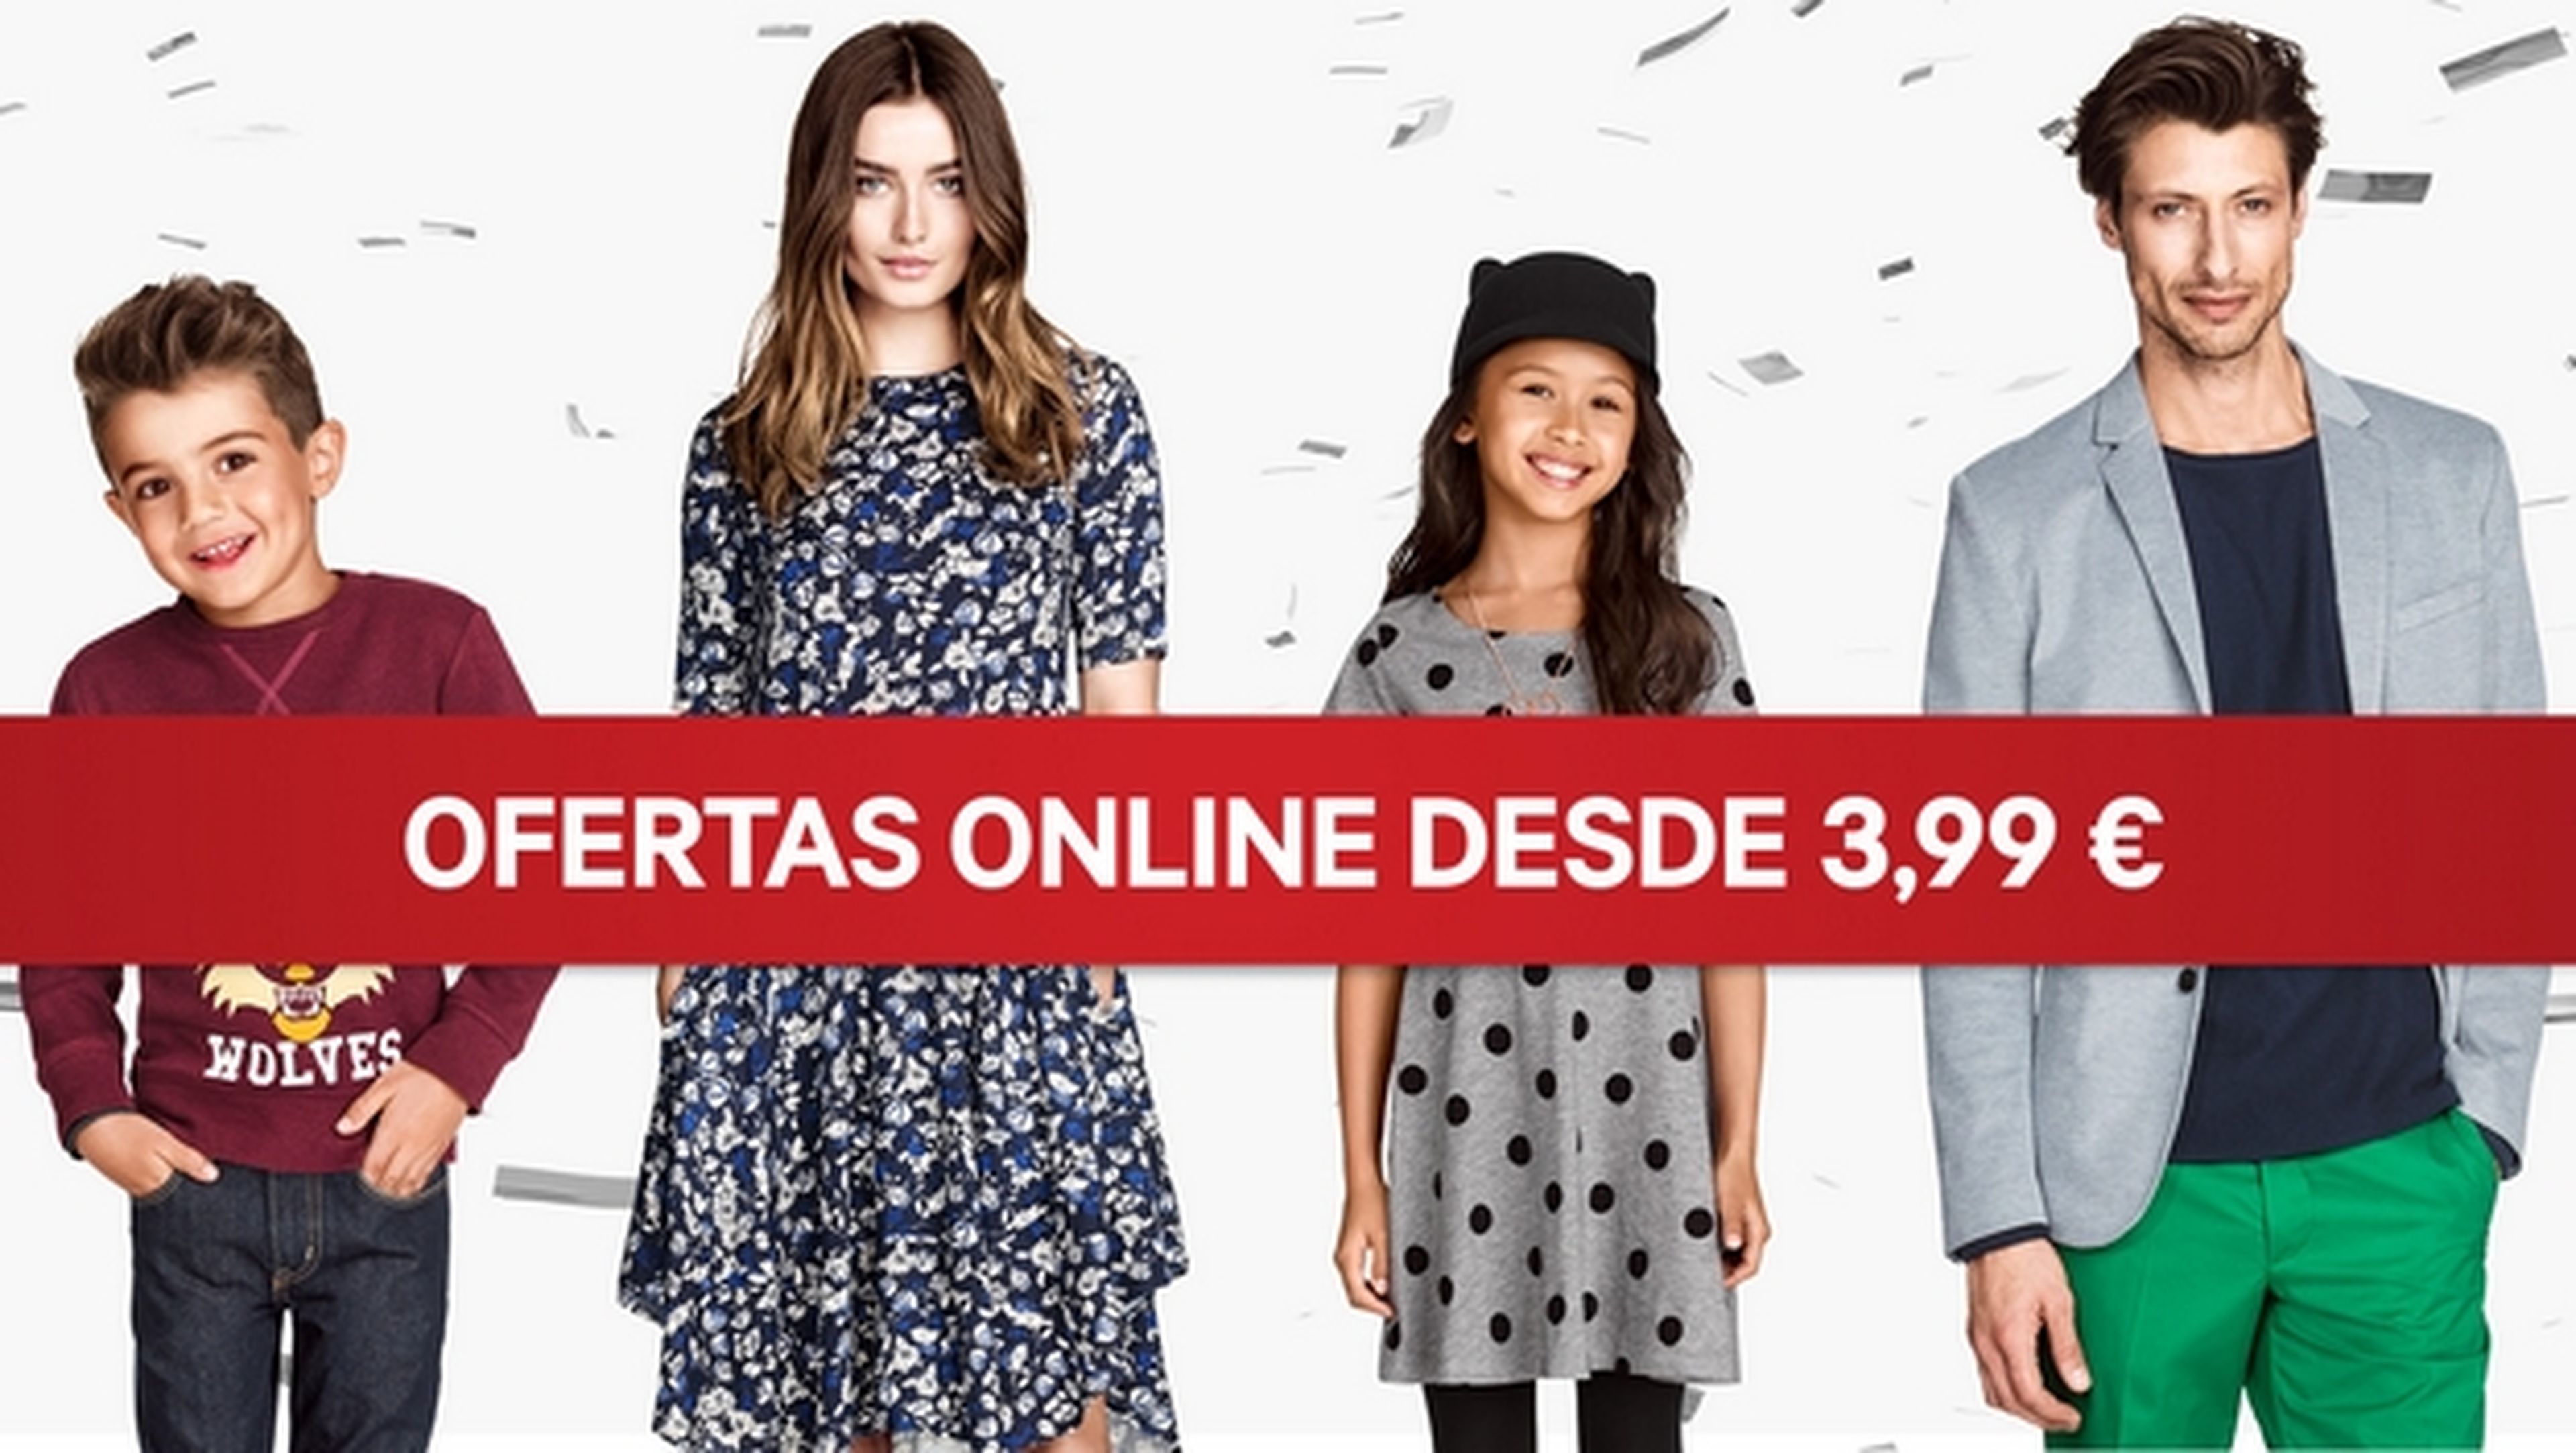 Oblicuo Inferir comienzo La tienda online de ropa H&M, abre hoy sus puertas en España | Computer Hoy